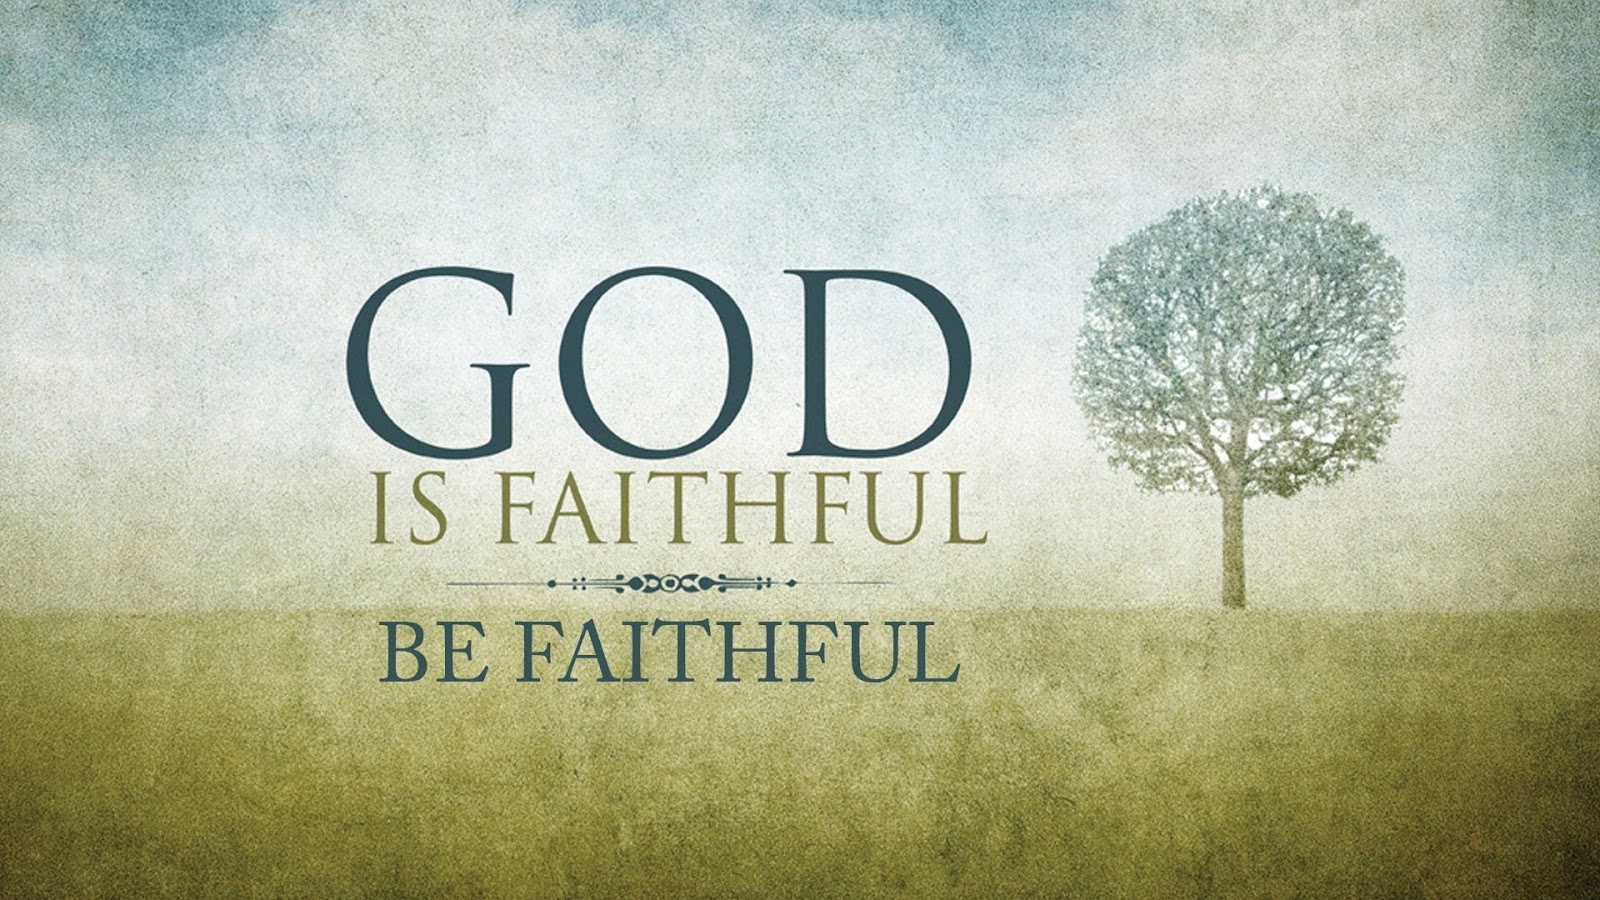 be_faithful.jpg